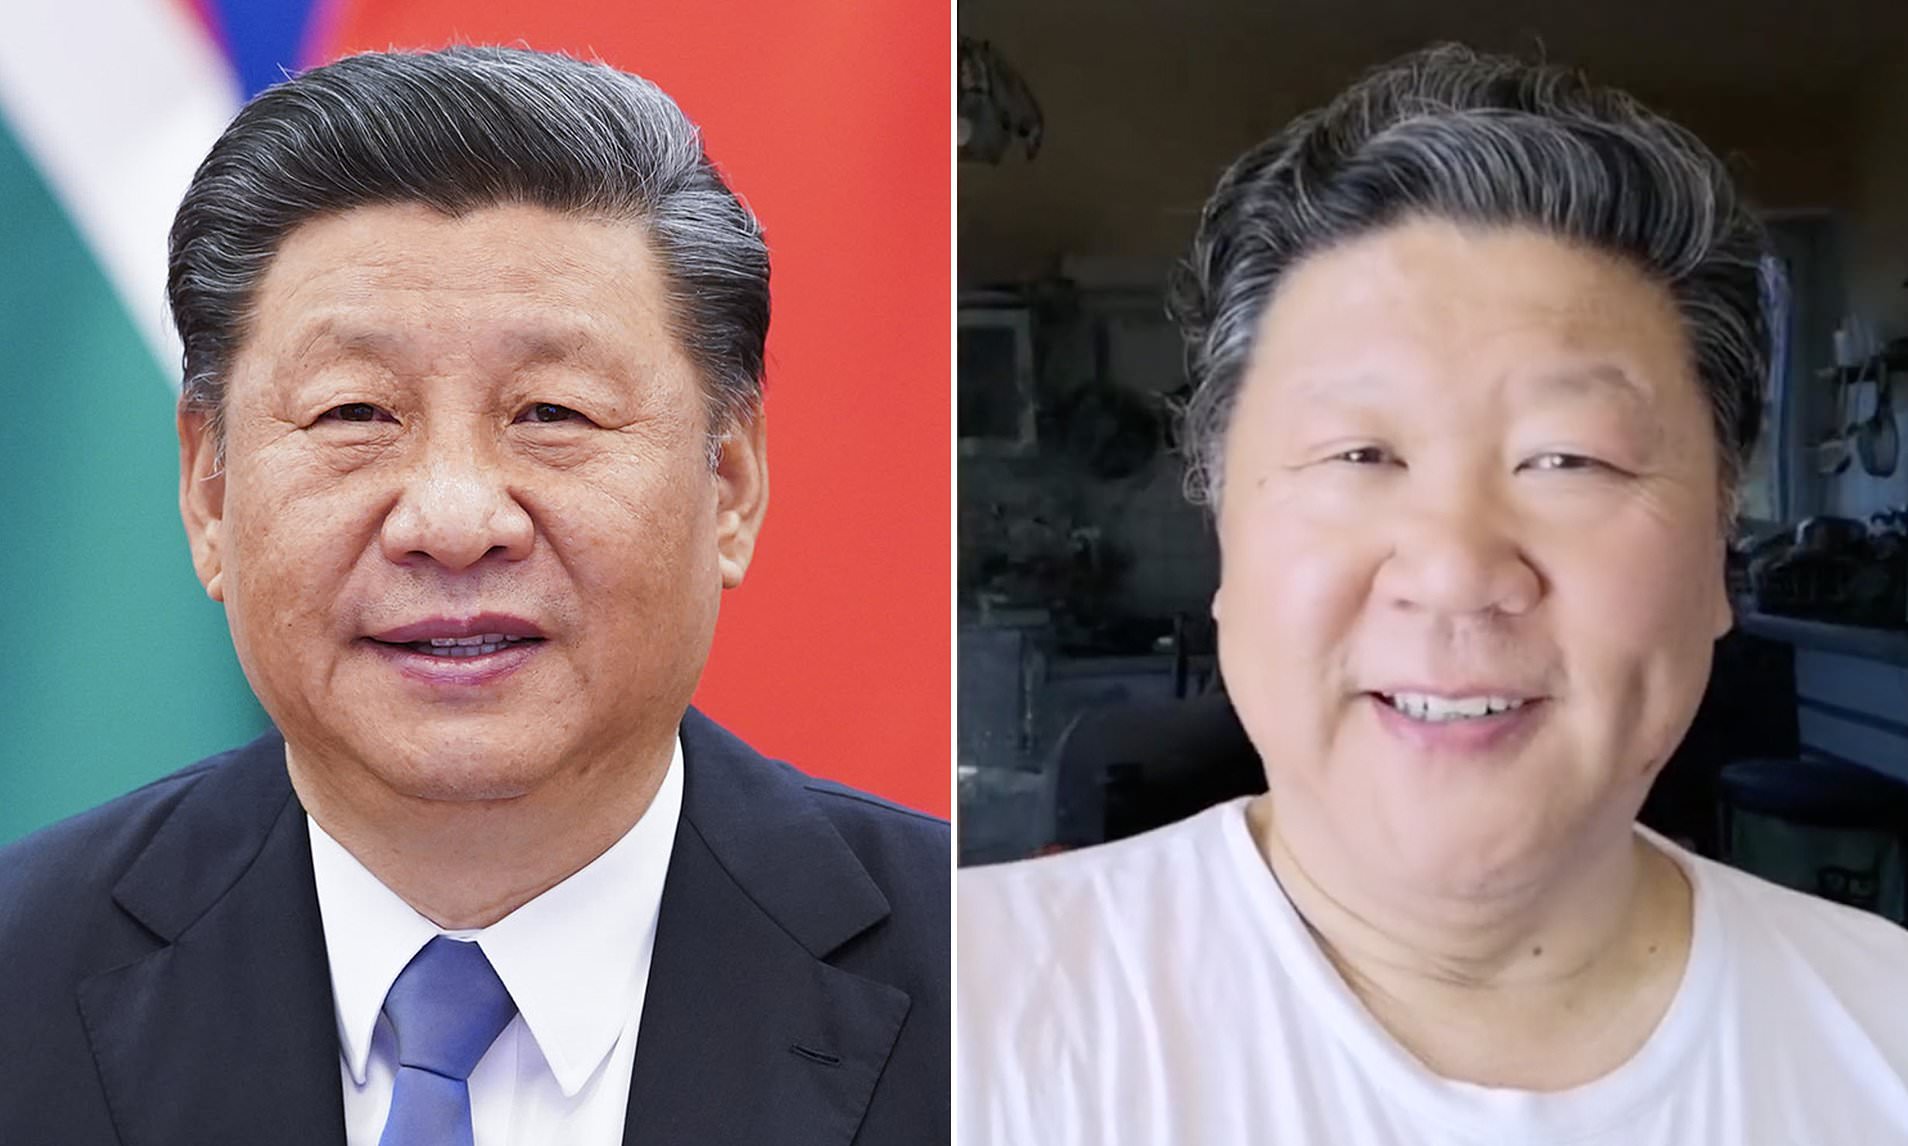 Ca sĩ opera Liu Keqing (phải) có ngoại hình giống với Chủ tịch Trung Quốc Tập Cận Bình. Ảnh: PA/Douyin